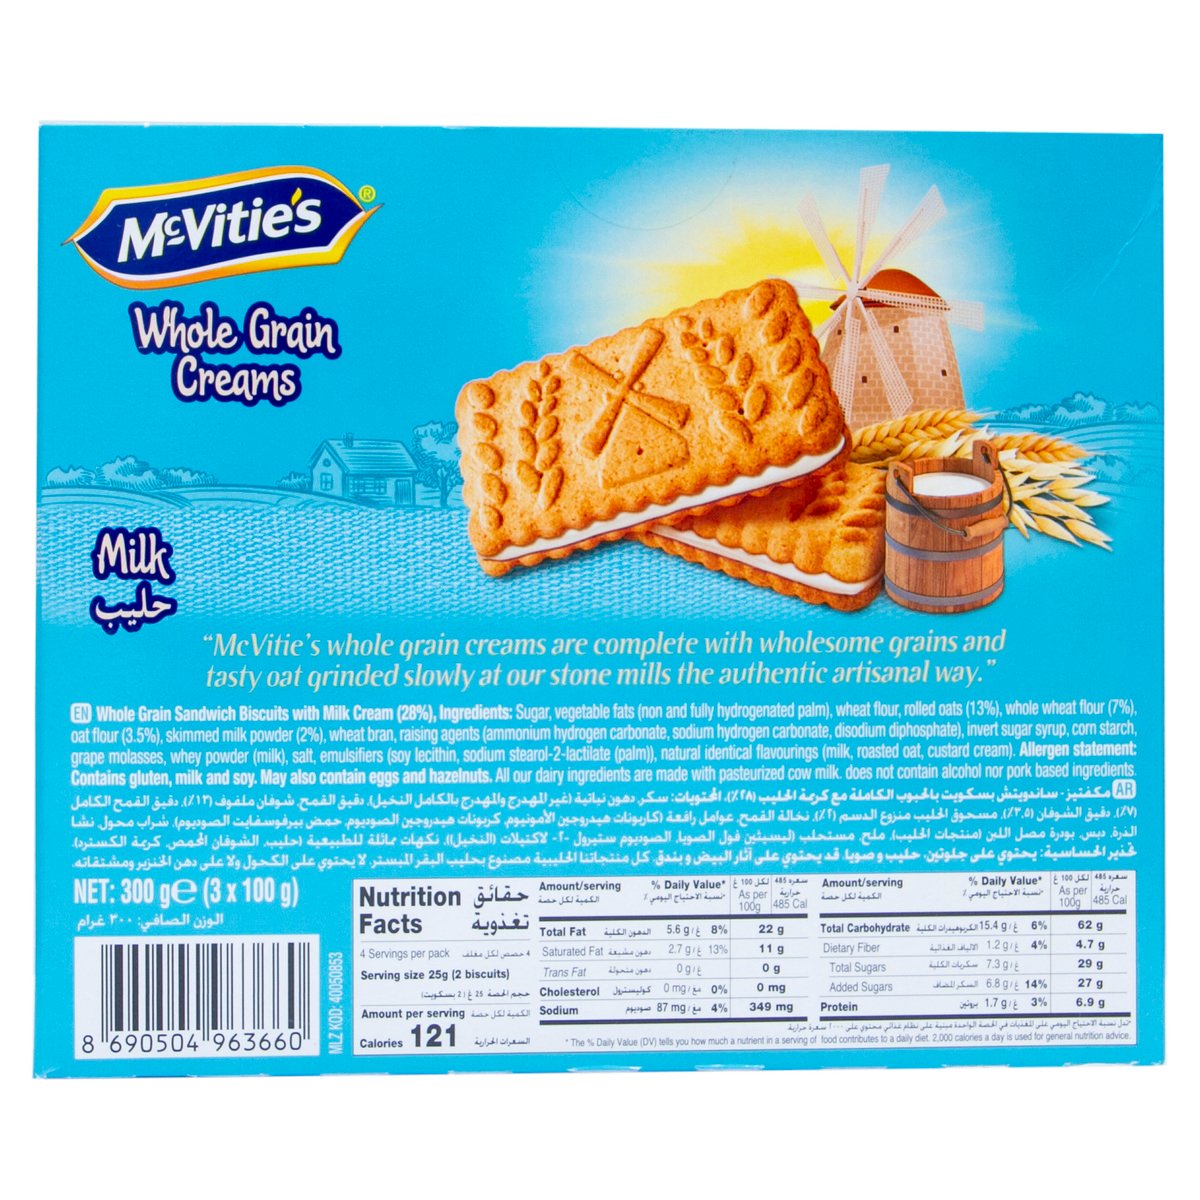 Mcvitie's Whole Grain Creams Milk Biscuit 3 x 100 g